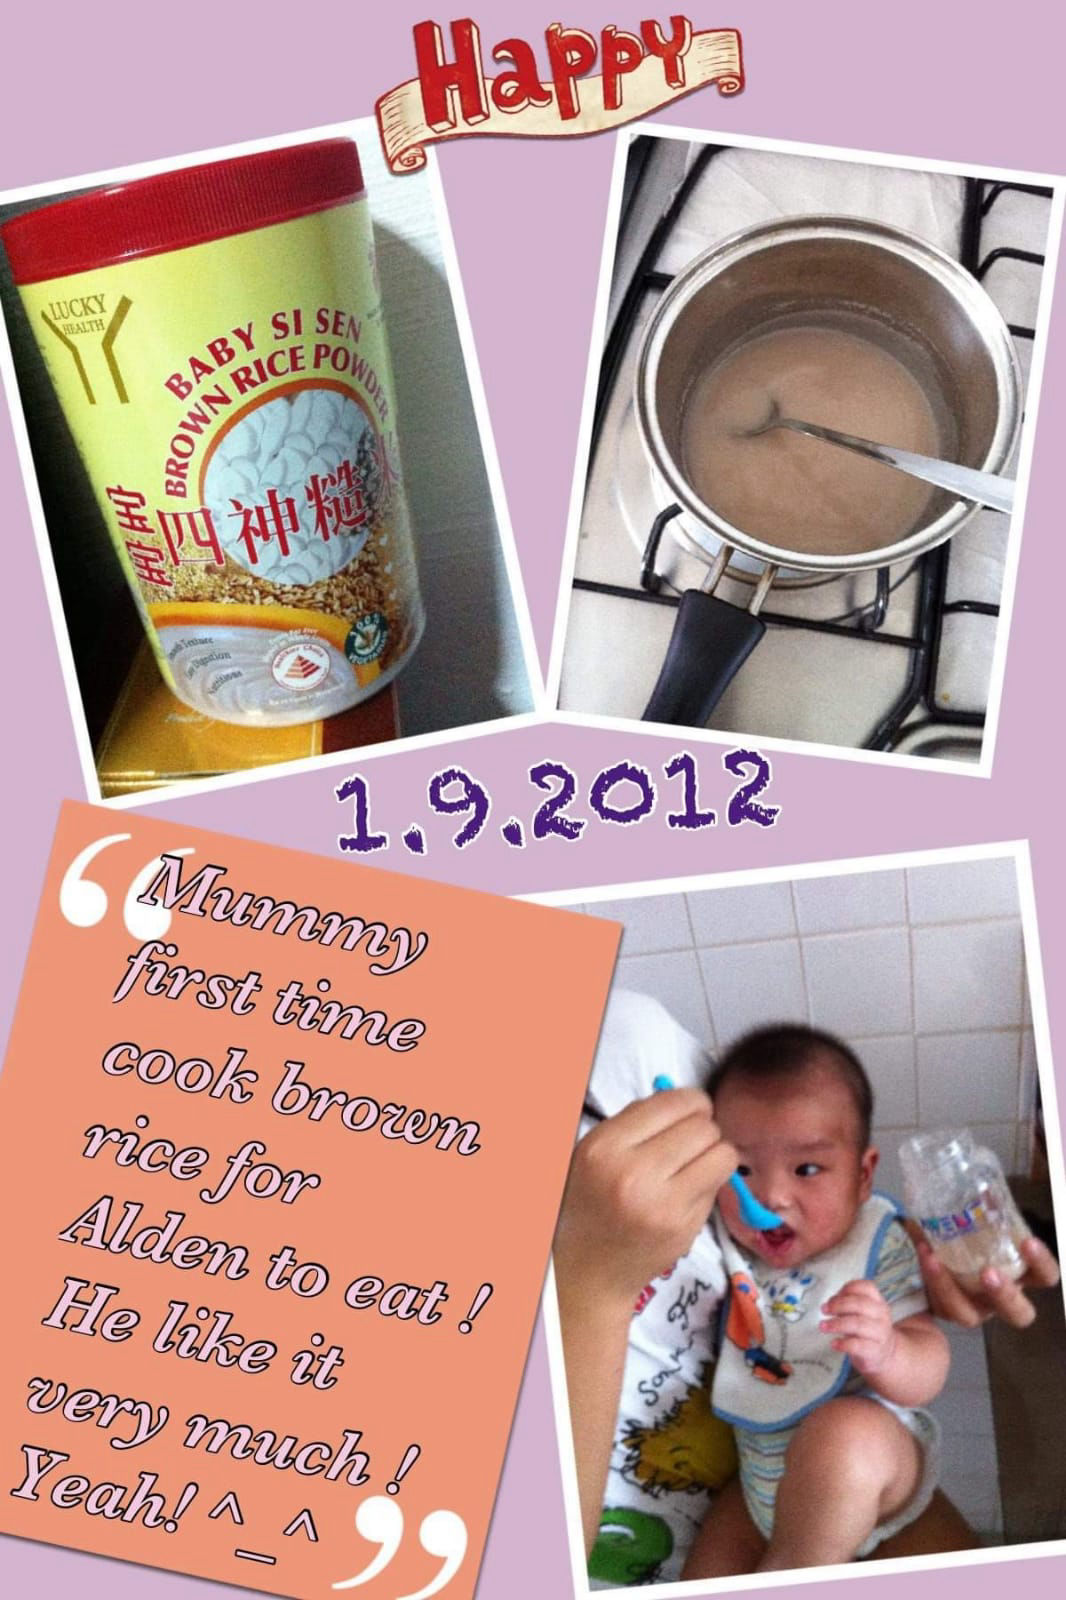 Lucky Health Baby Si Sen Brown Rice Powder